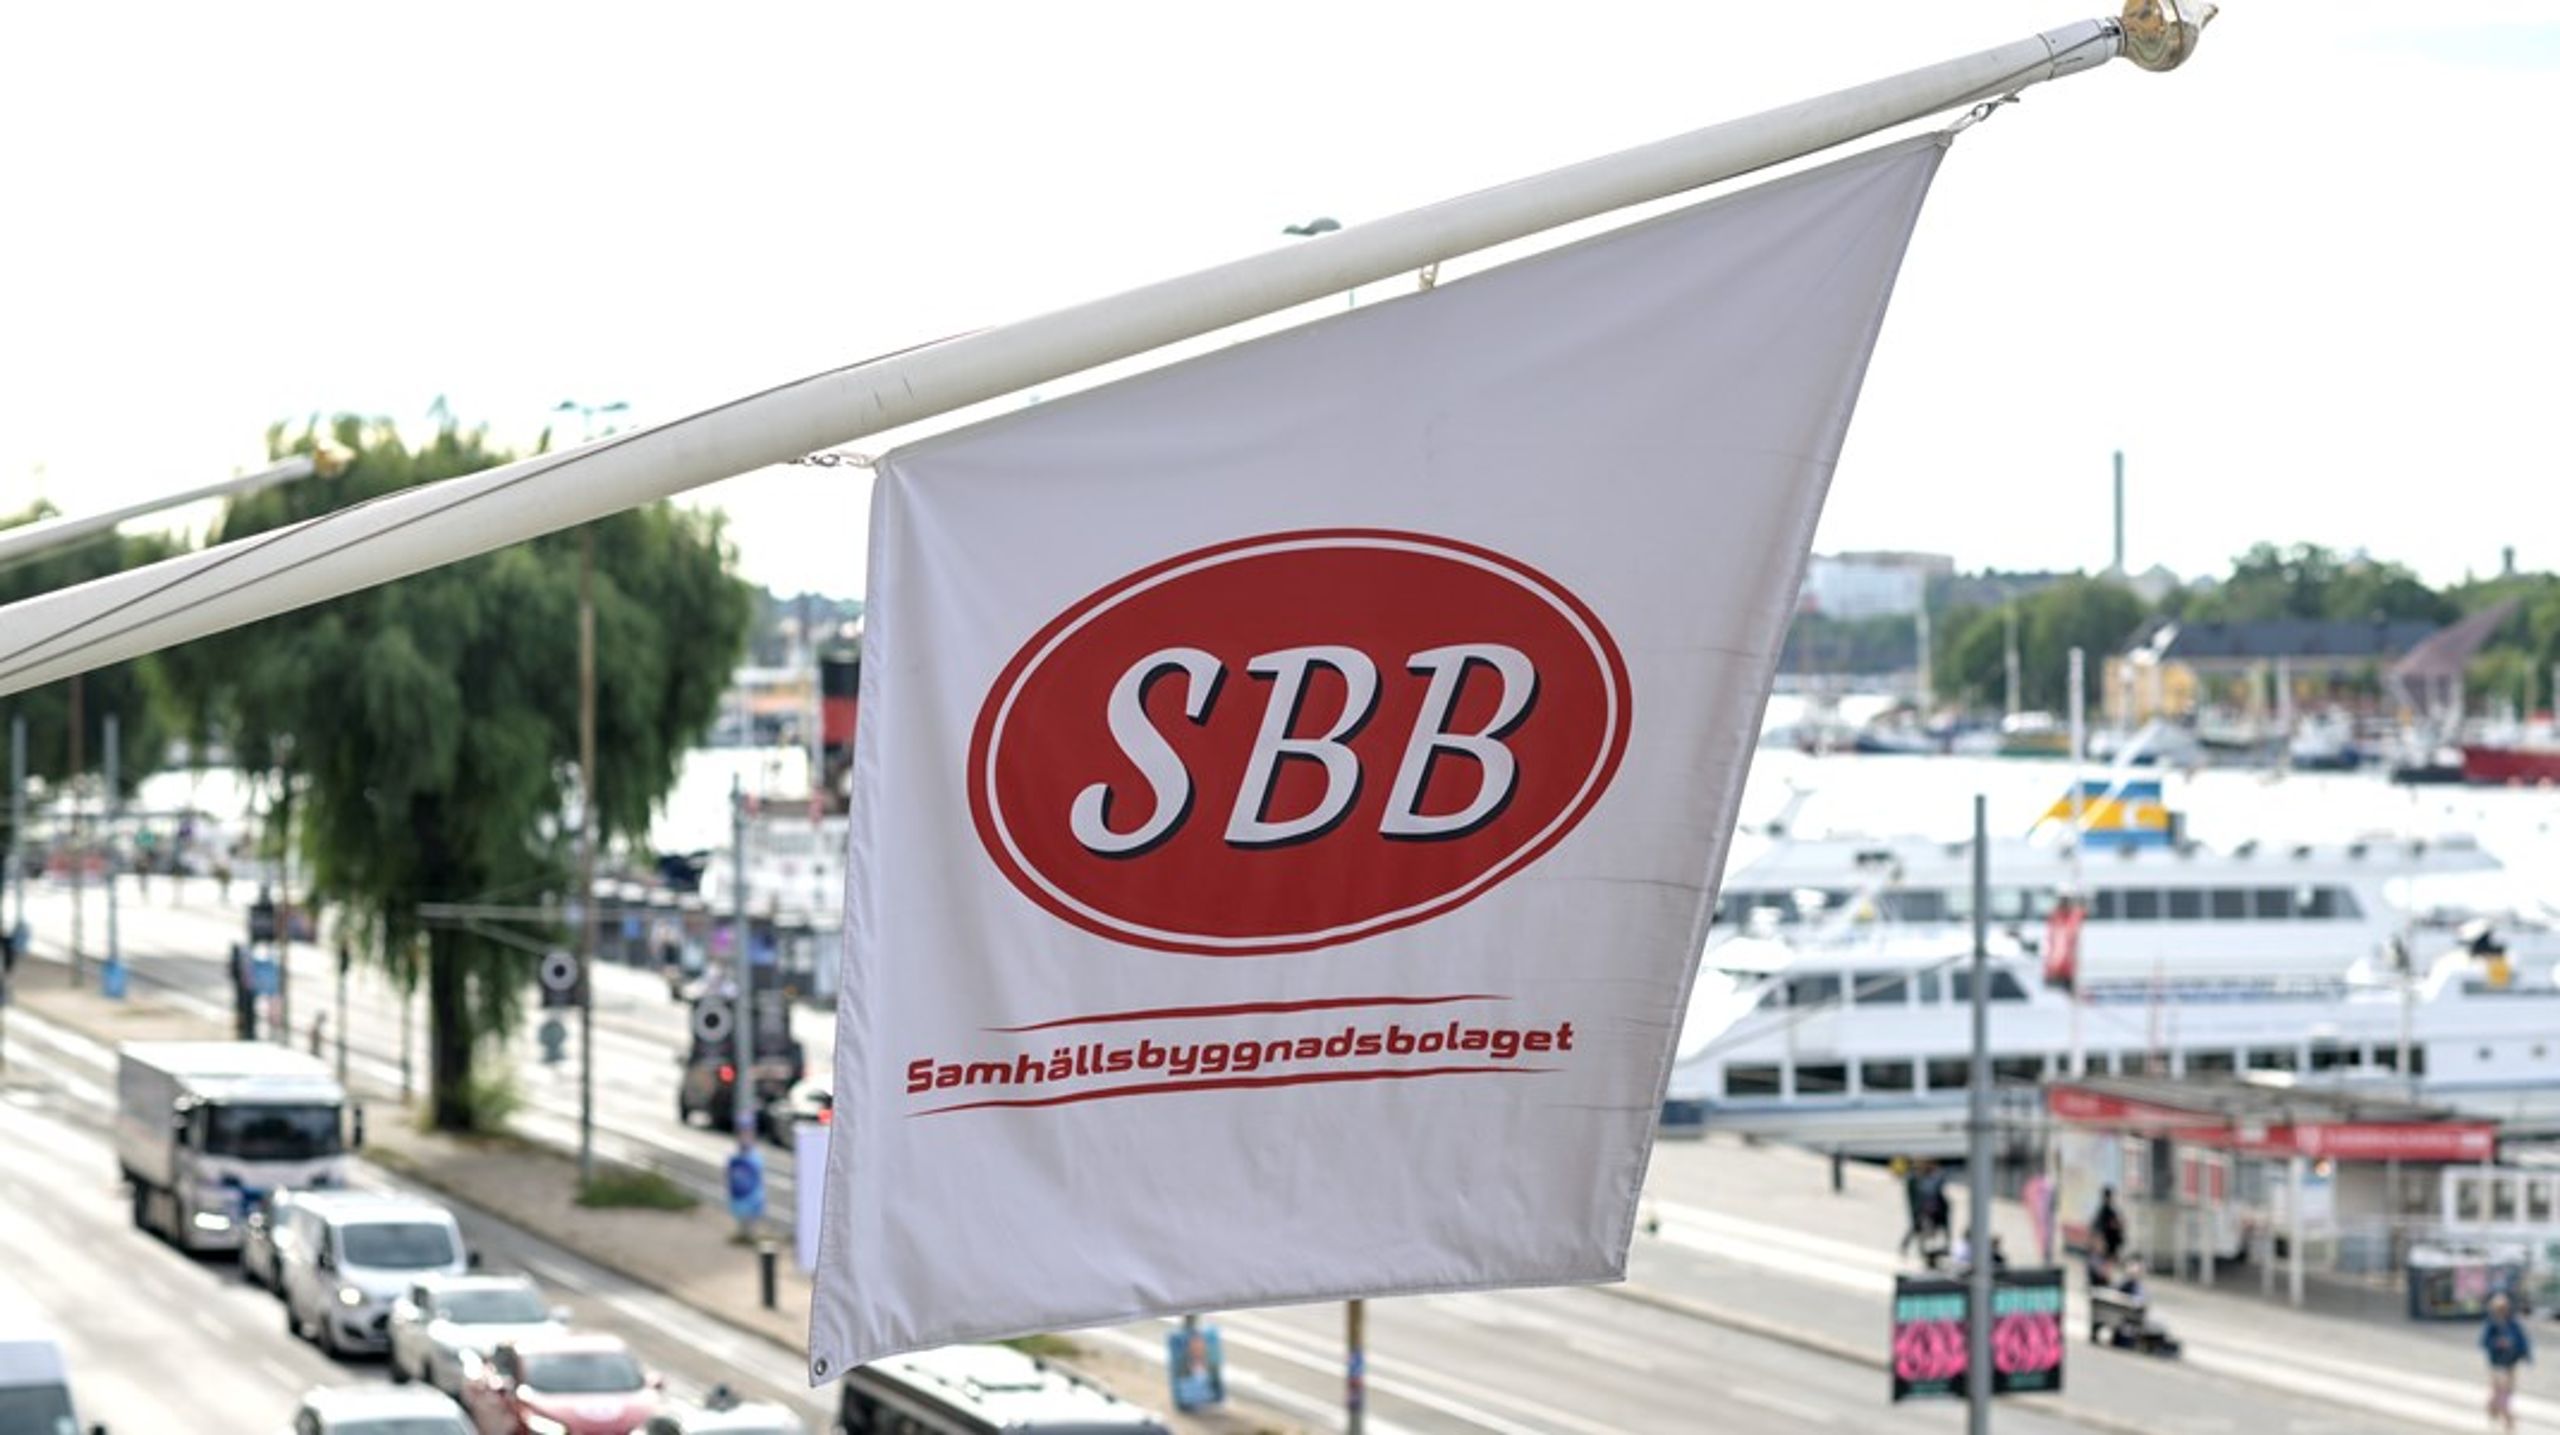 Regeringen måste vidta åtgärder för att återföra SBB:s fastigheter till det offentliga, skriver Clara Lindblom (V).